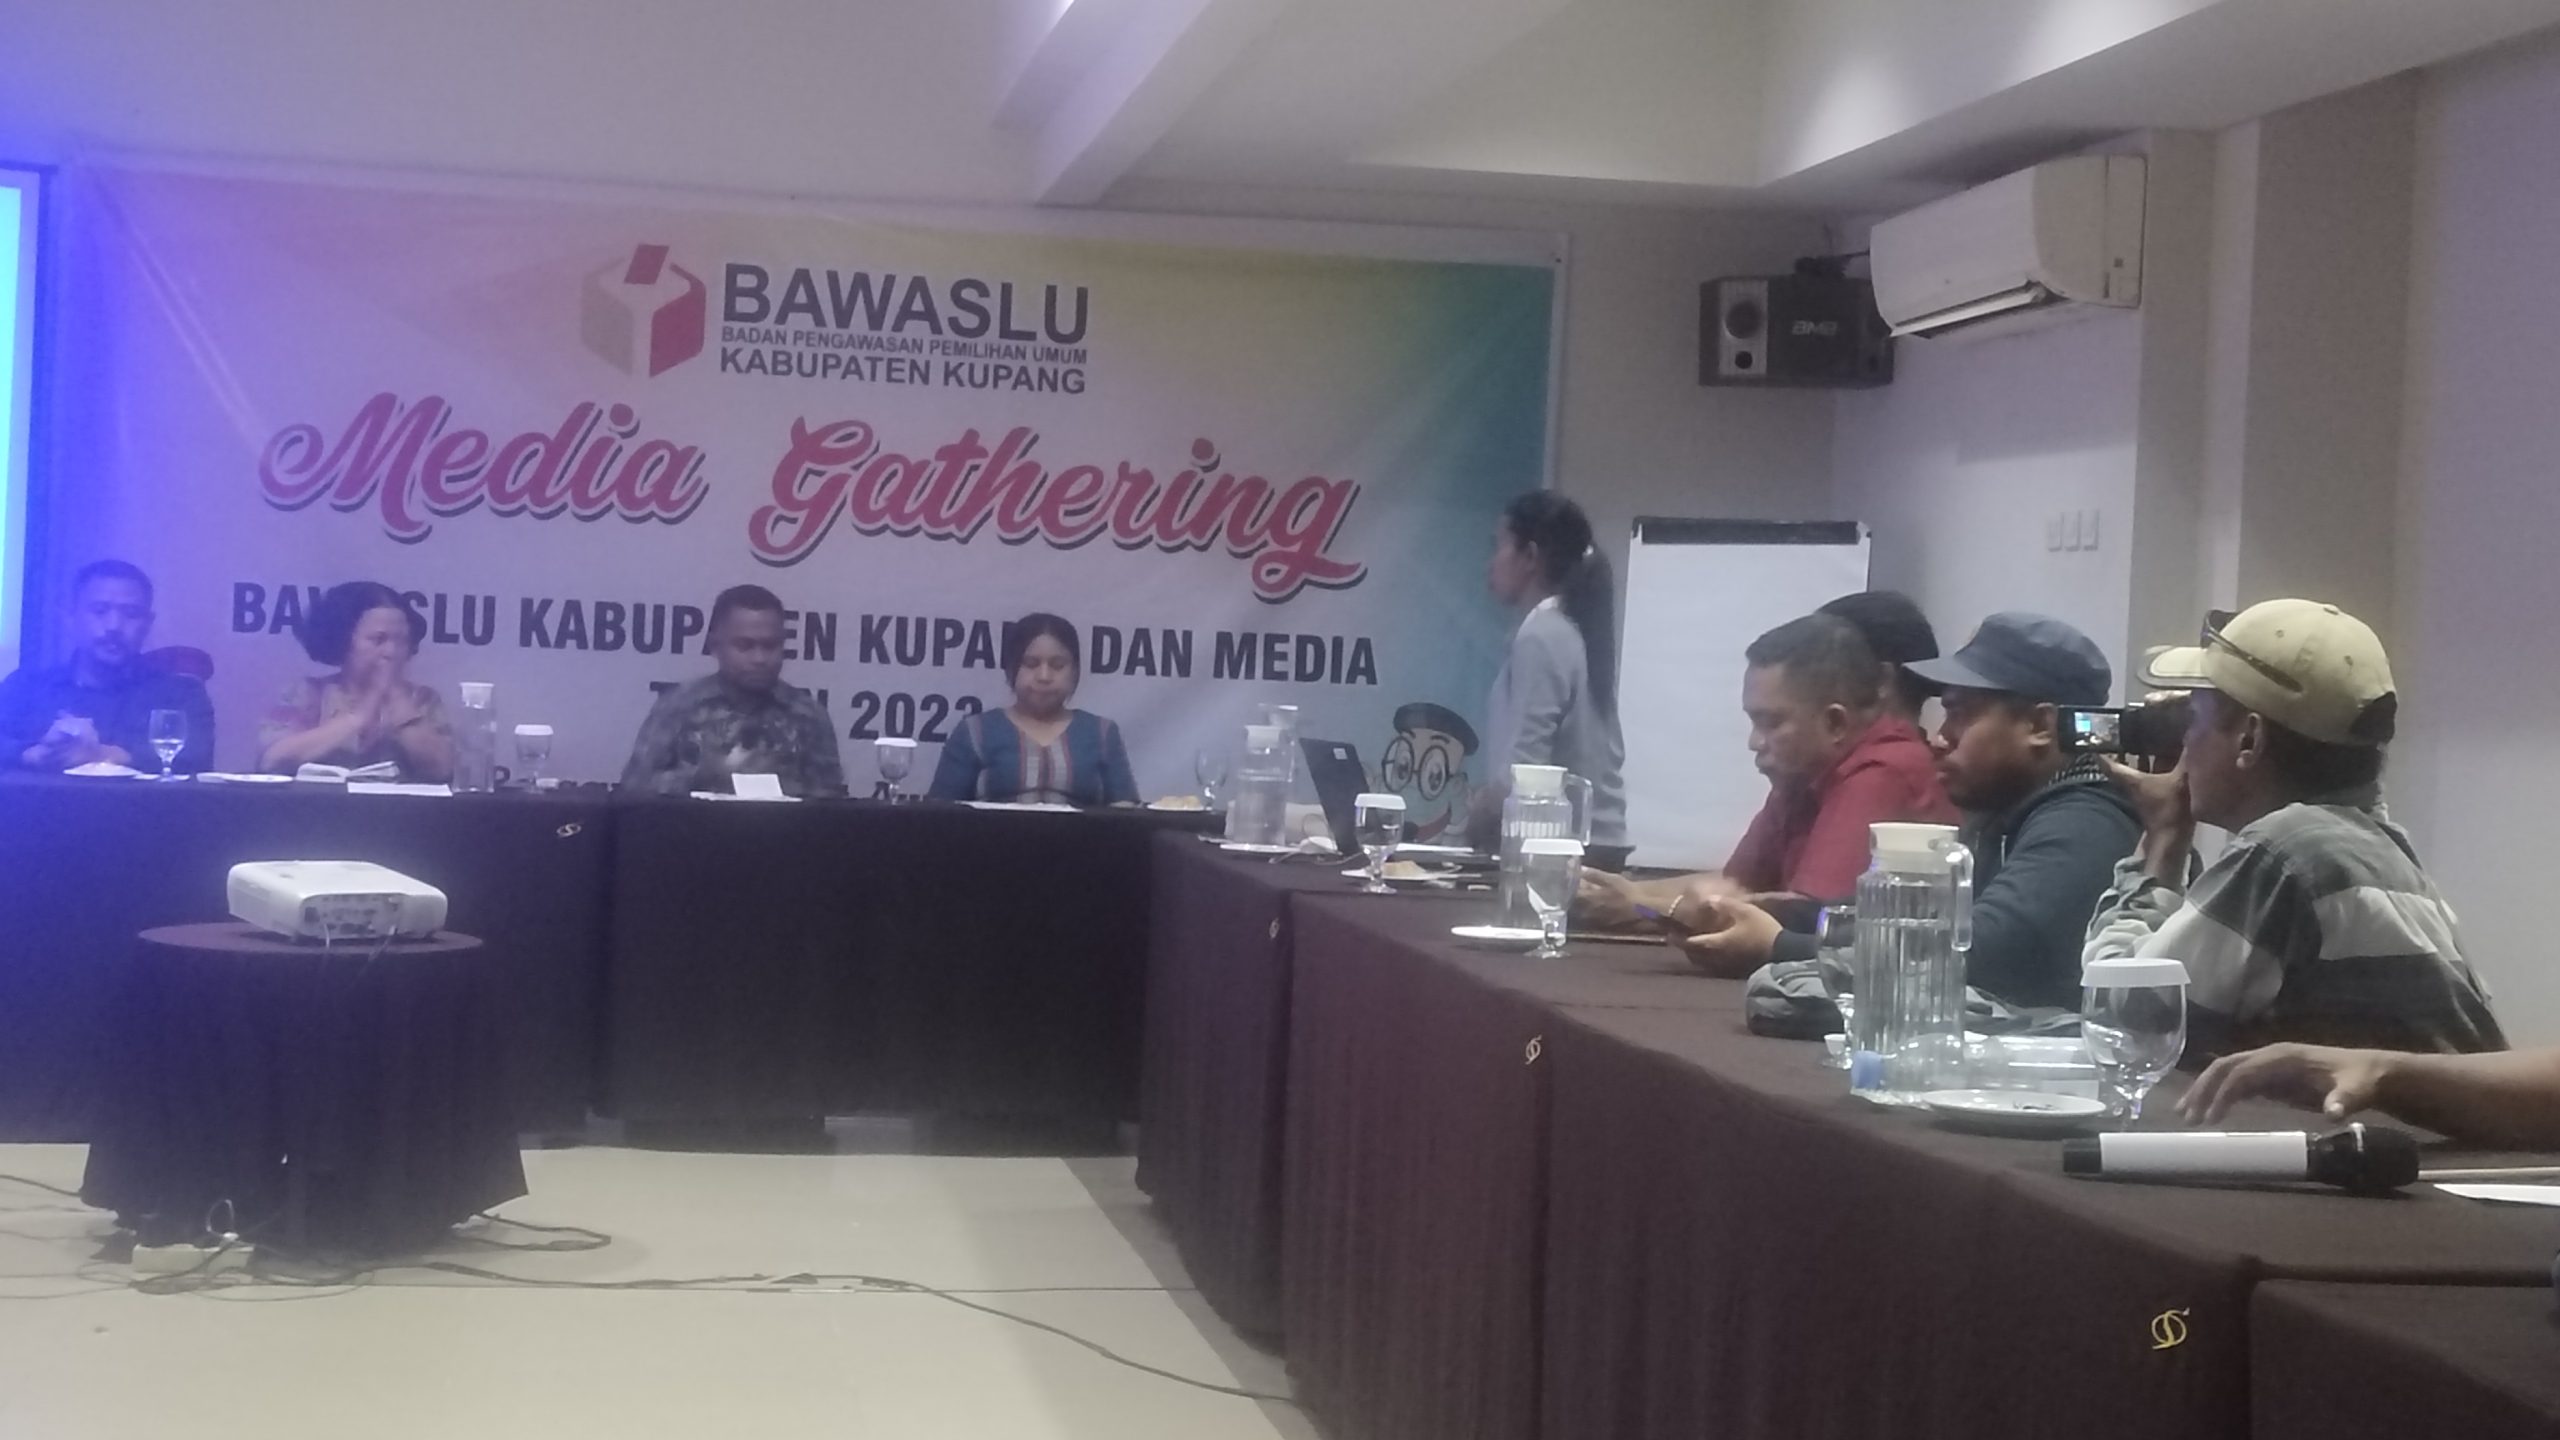 Eratkan Hubungan Bersama Media, Bawaslu Kabupaten Kupang Gelar Media Gathering.